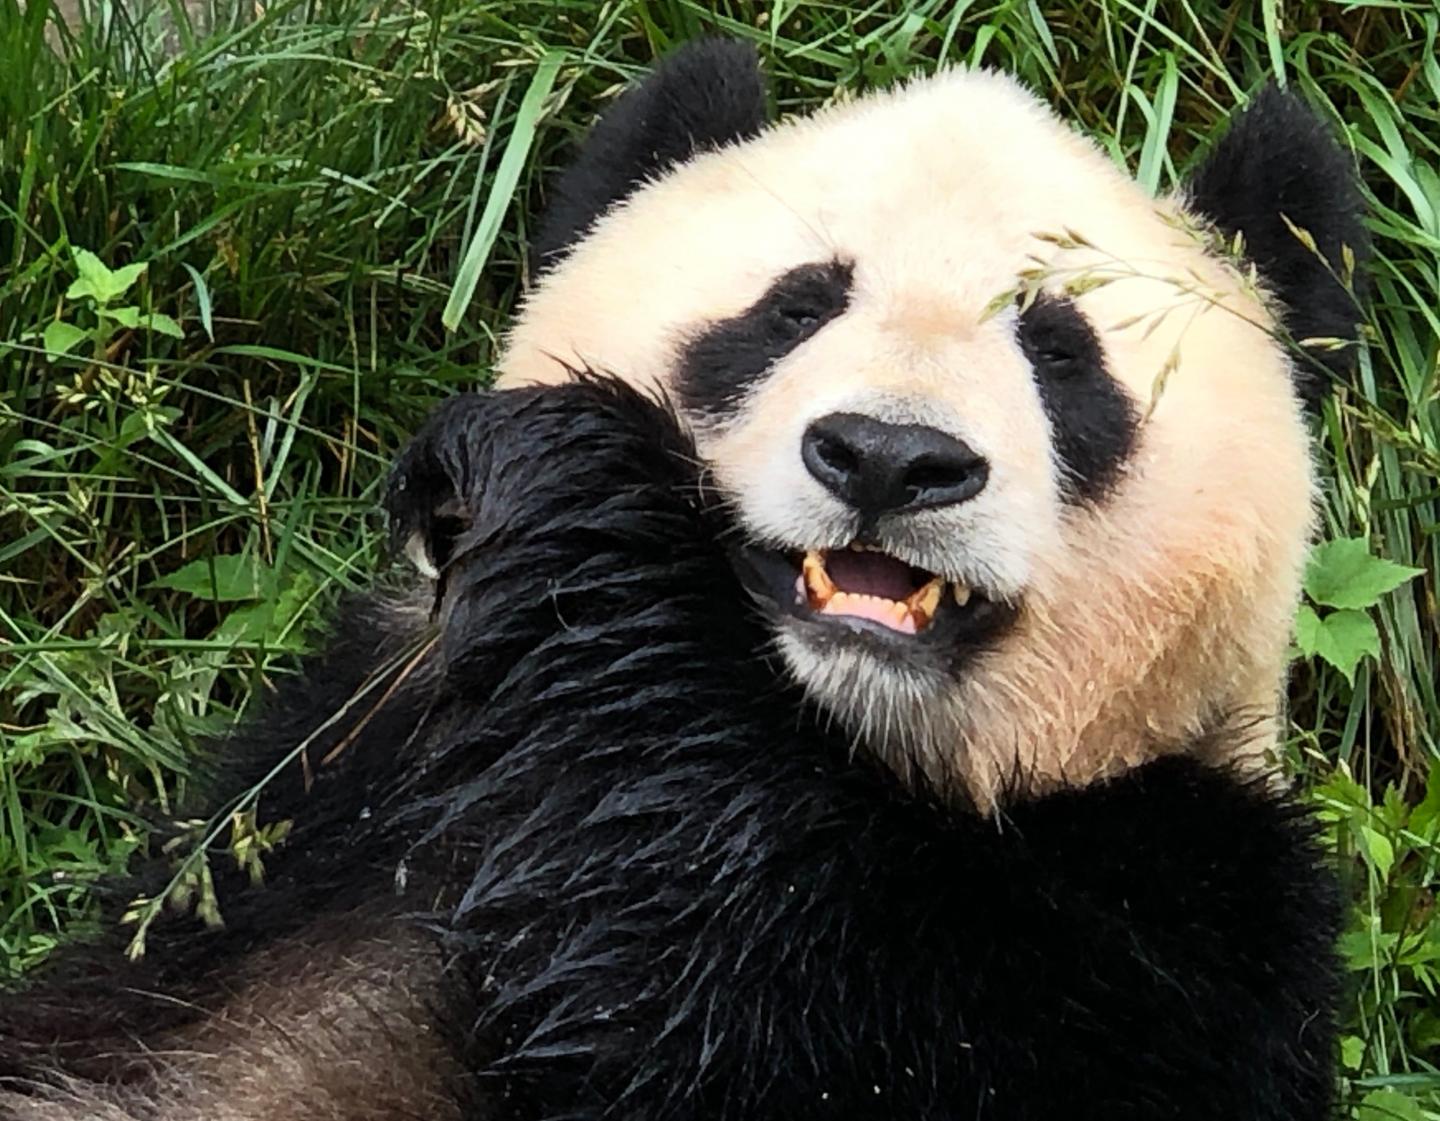 The giant panda's mystery revealed | EurekAlert!